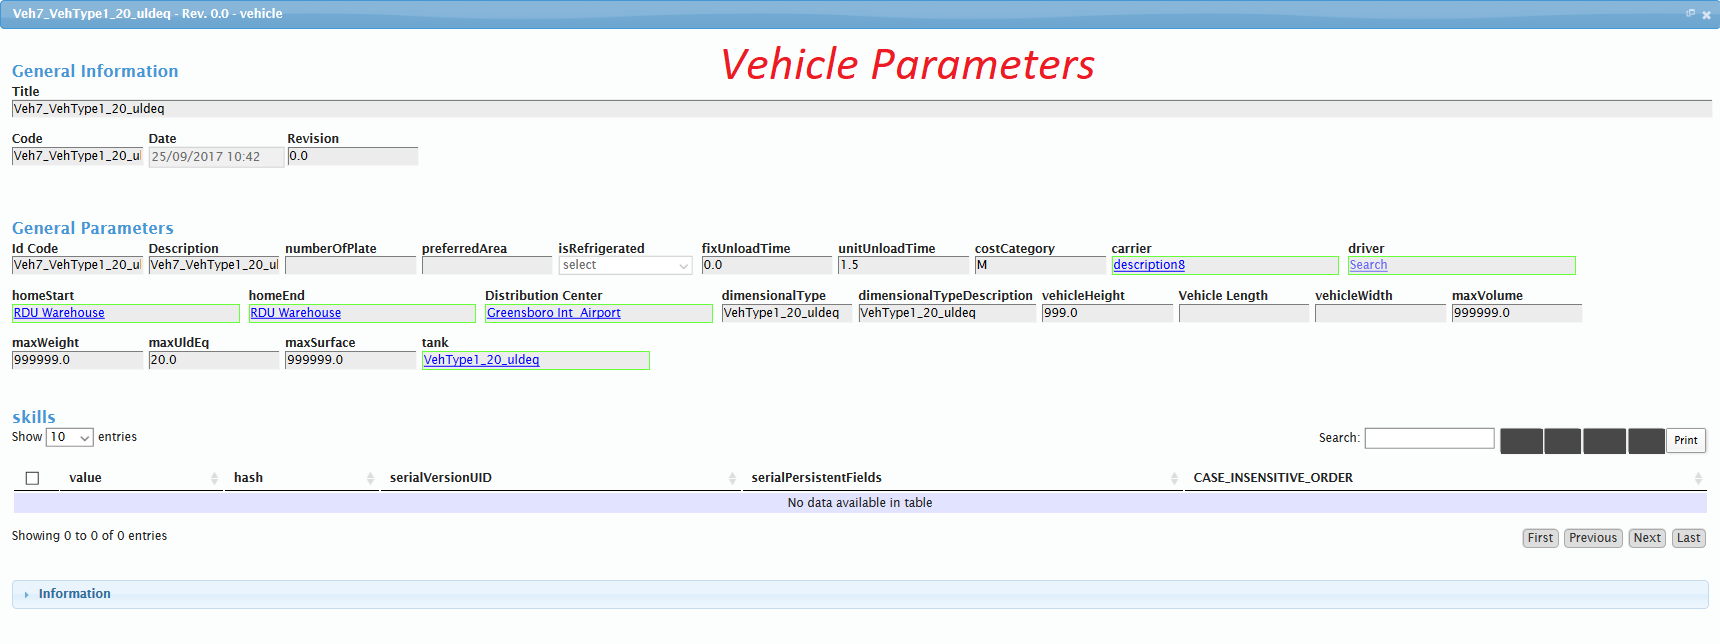 Vehicle parameters